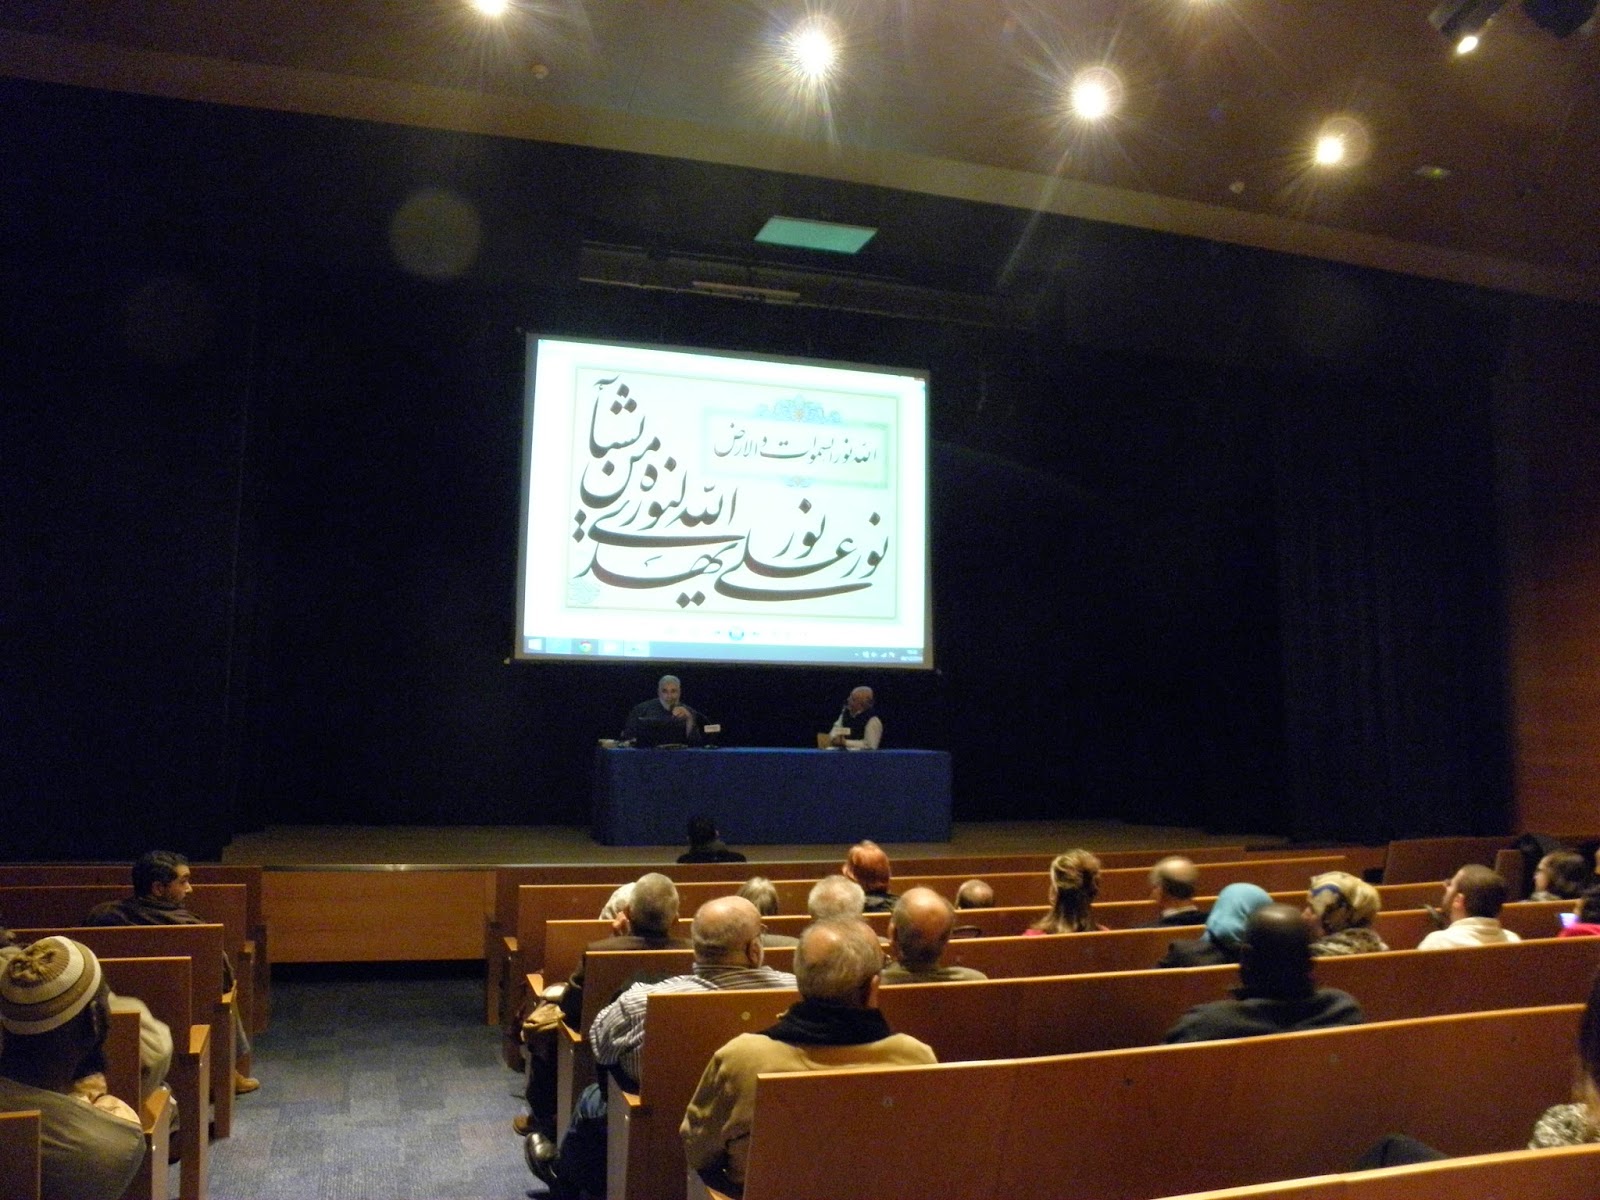 Conferencia sobre el arte islámico y la caligrafía árabe en Zaragoza